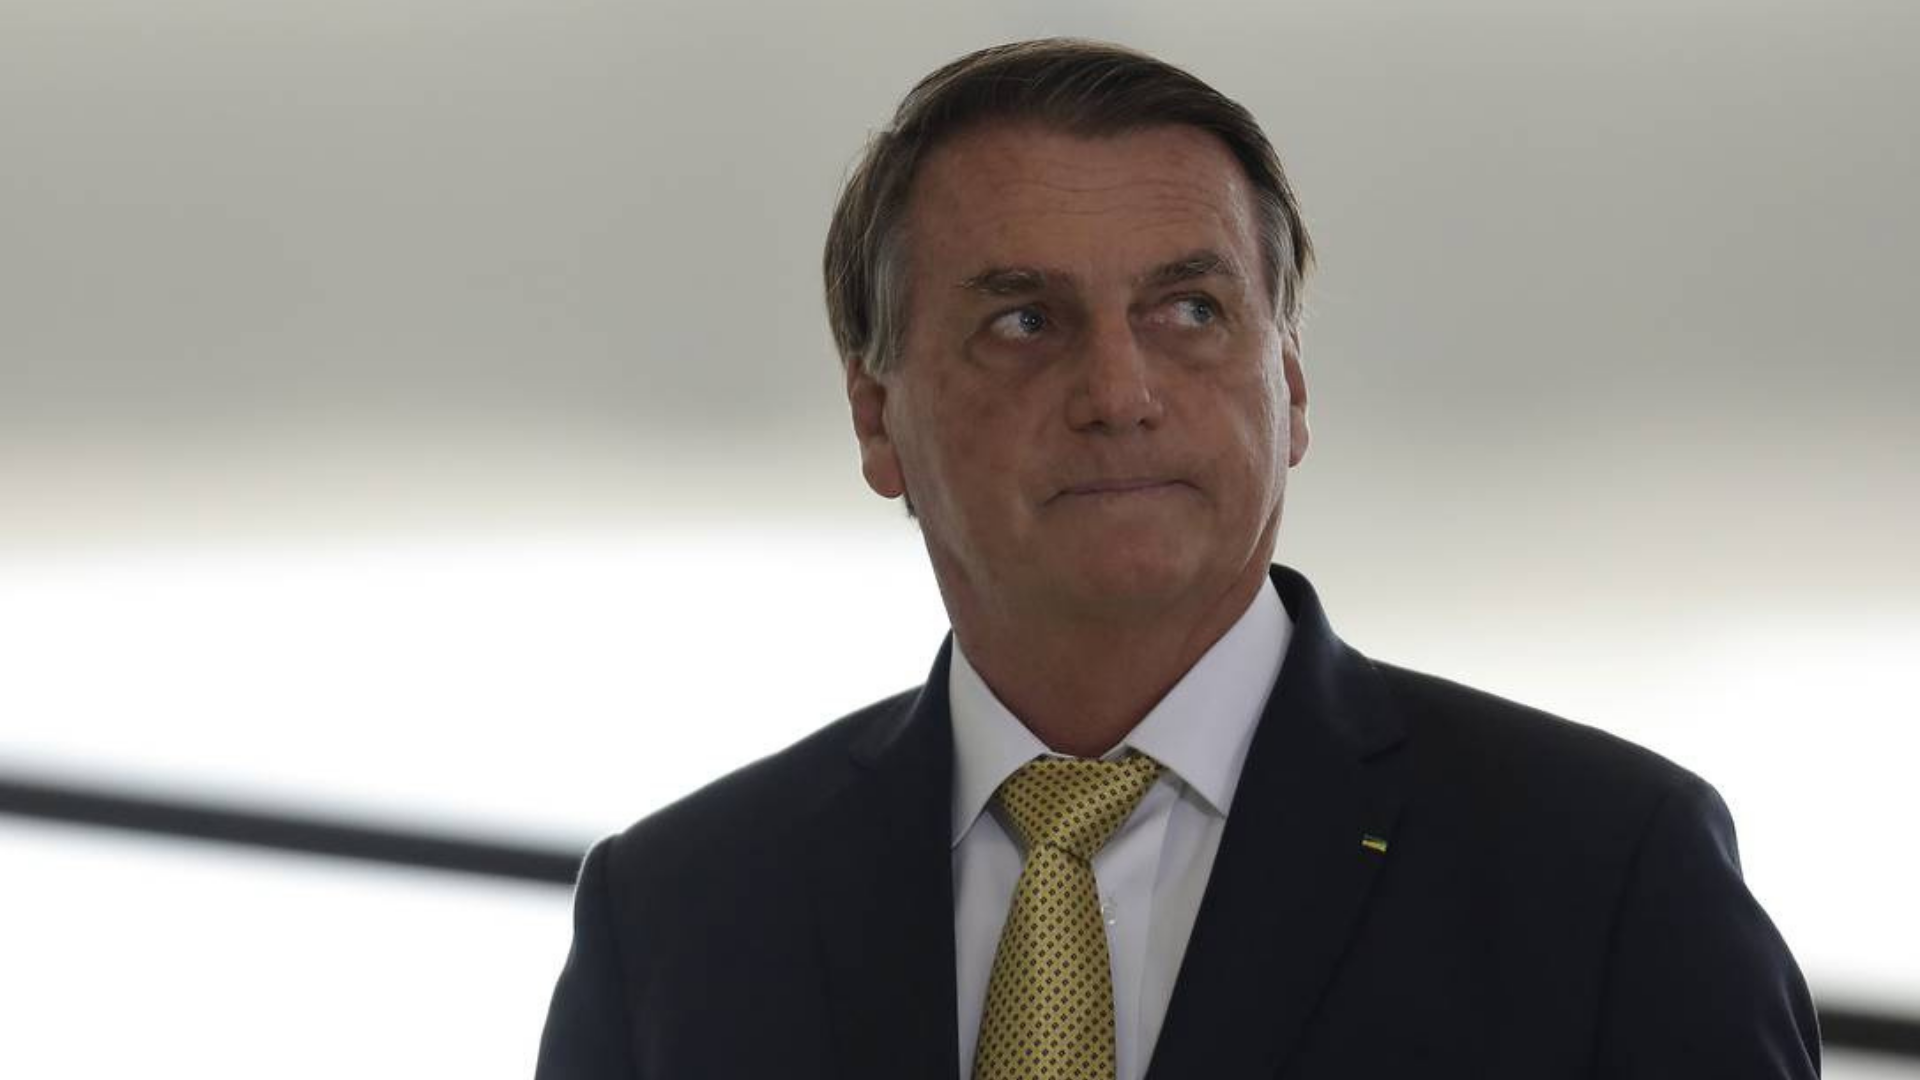 Segurança da equipe de Bolsonaro é flagrado agredindo jovens. ele usa terno cinza e gravata amarela, olhar confuso com a cabeça virada para a esquerda.